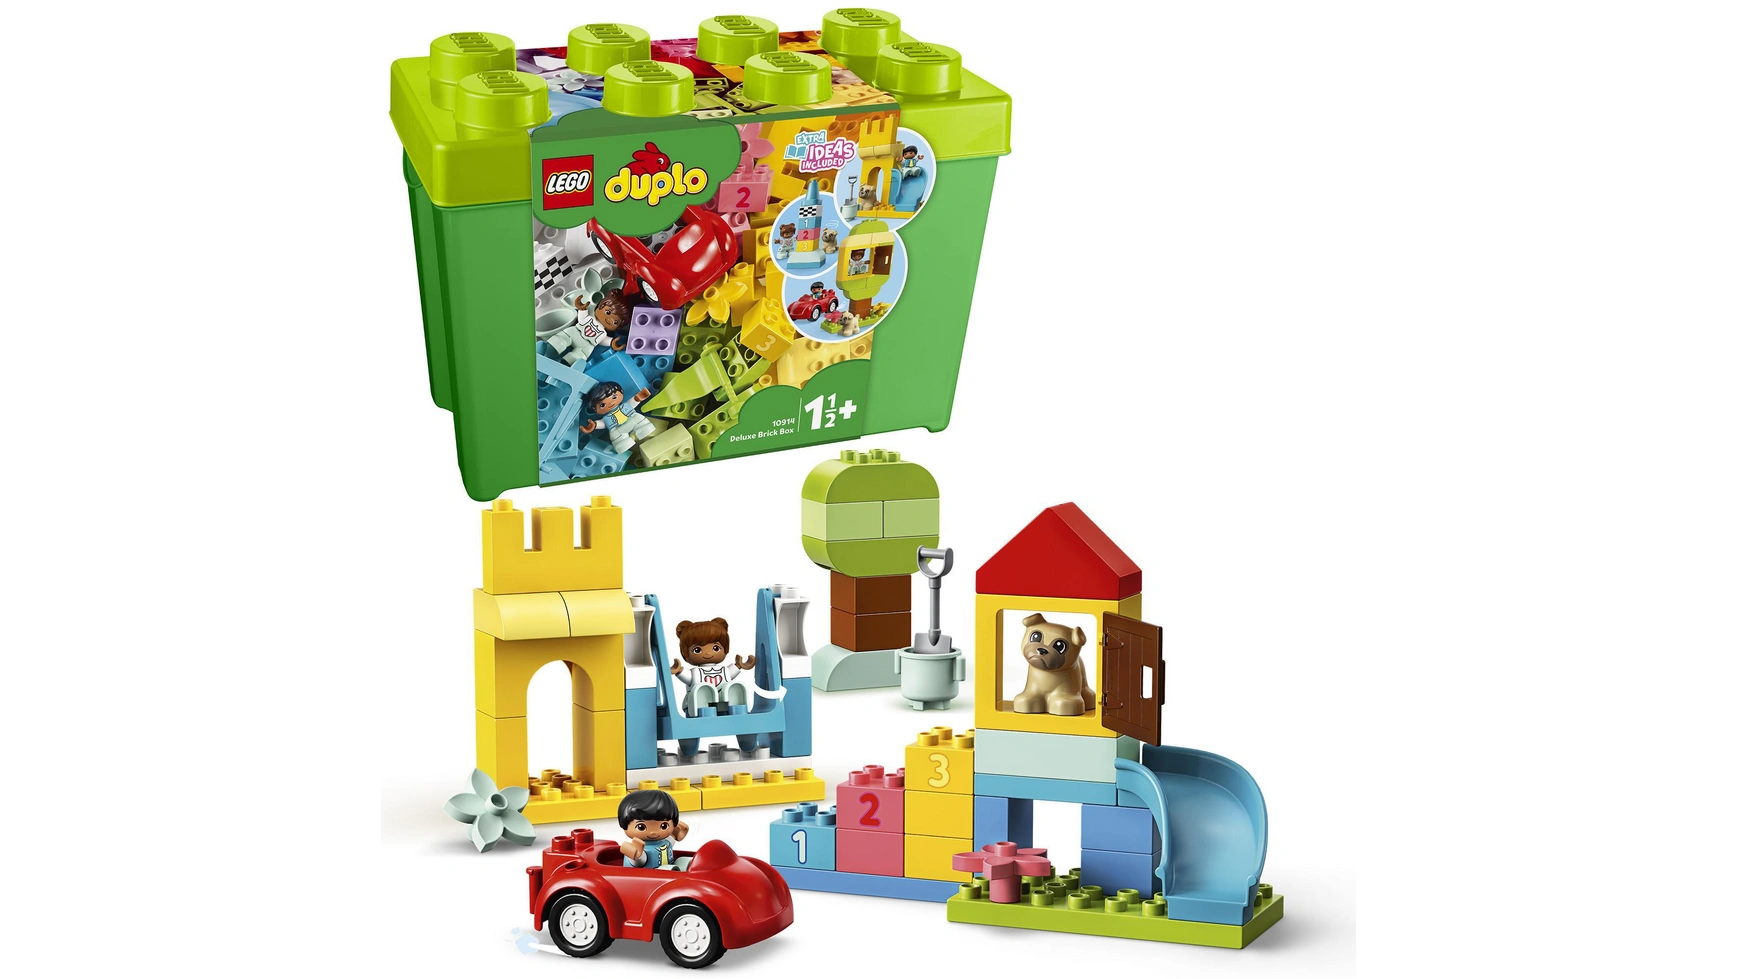 Lego DUPLO Роскошная кирпичная коробка, обучающая игрушка для детей от 1,5 лет